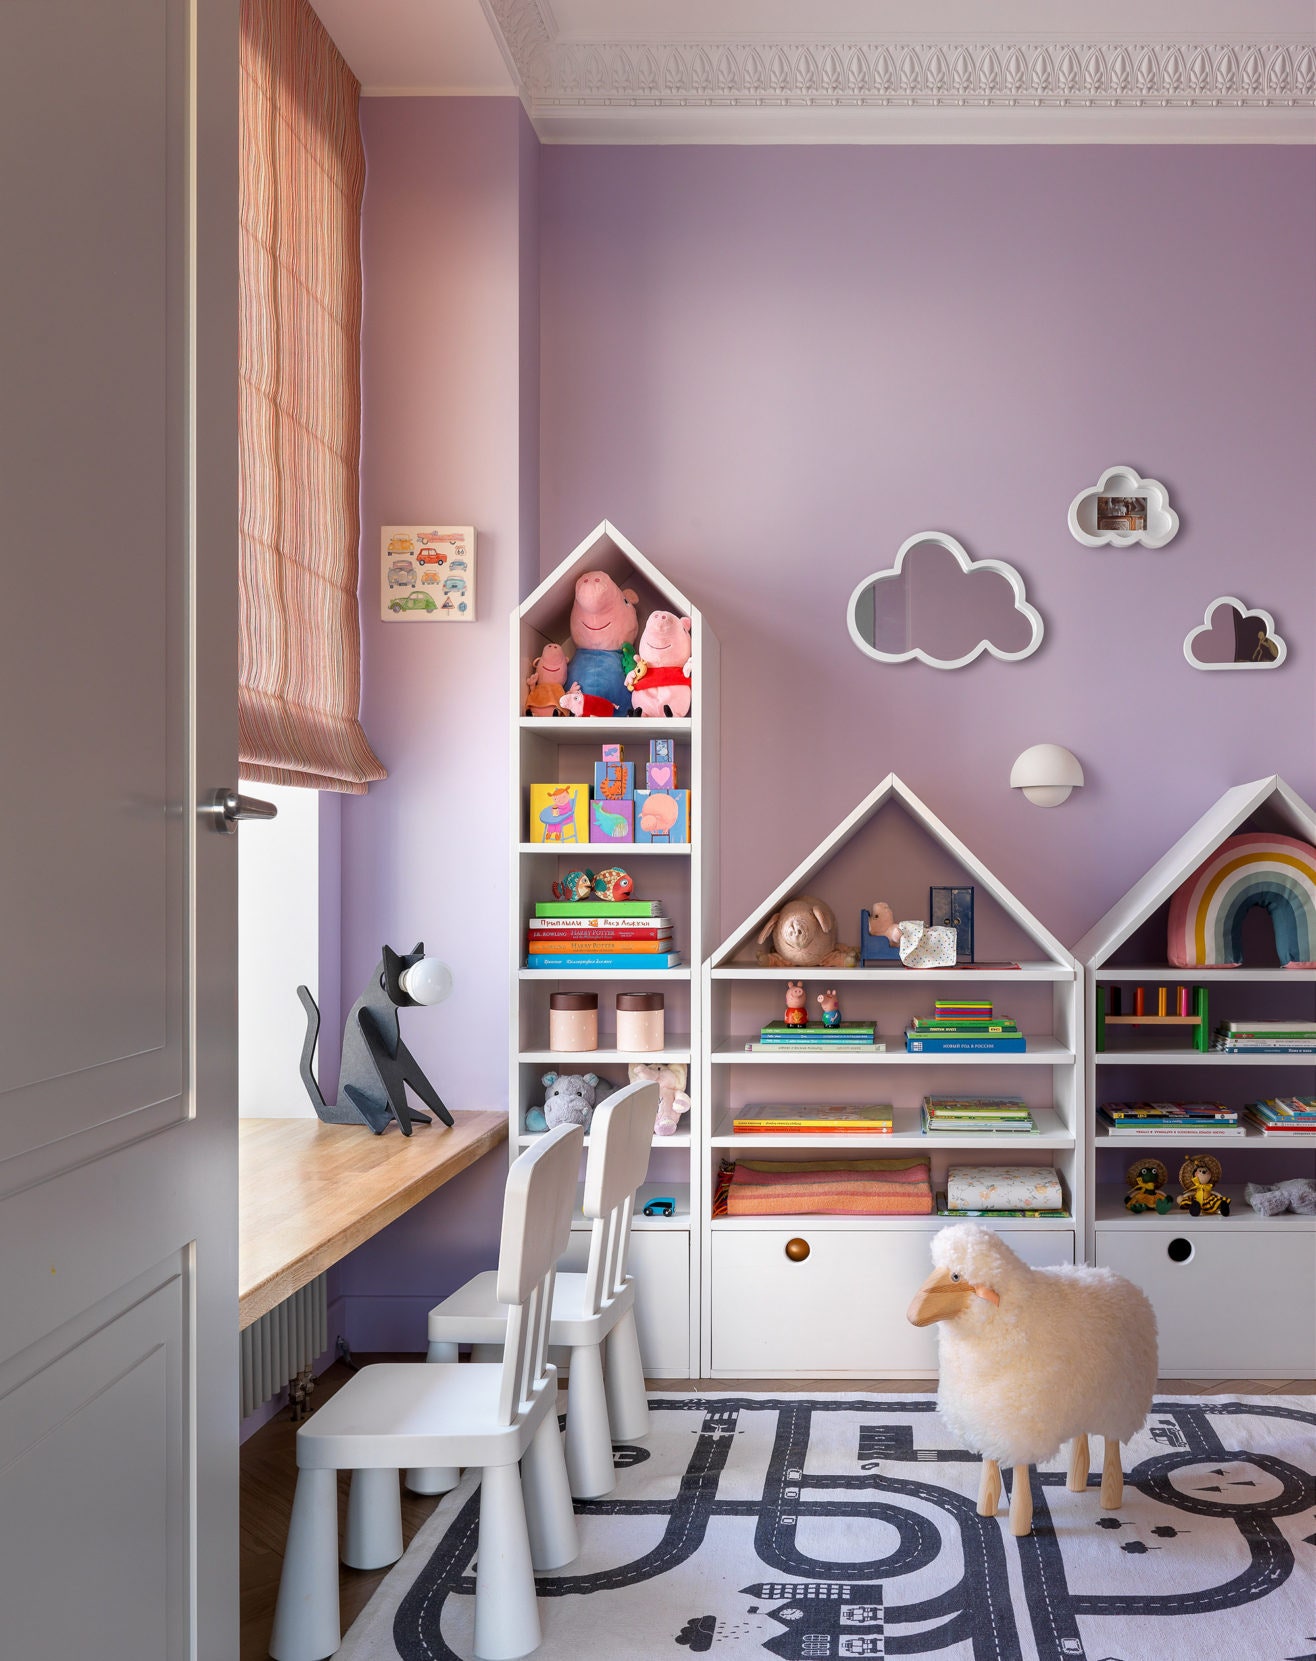 9 оригинальных идей по украшению стен детской комнаты